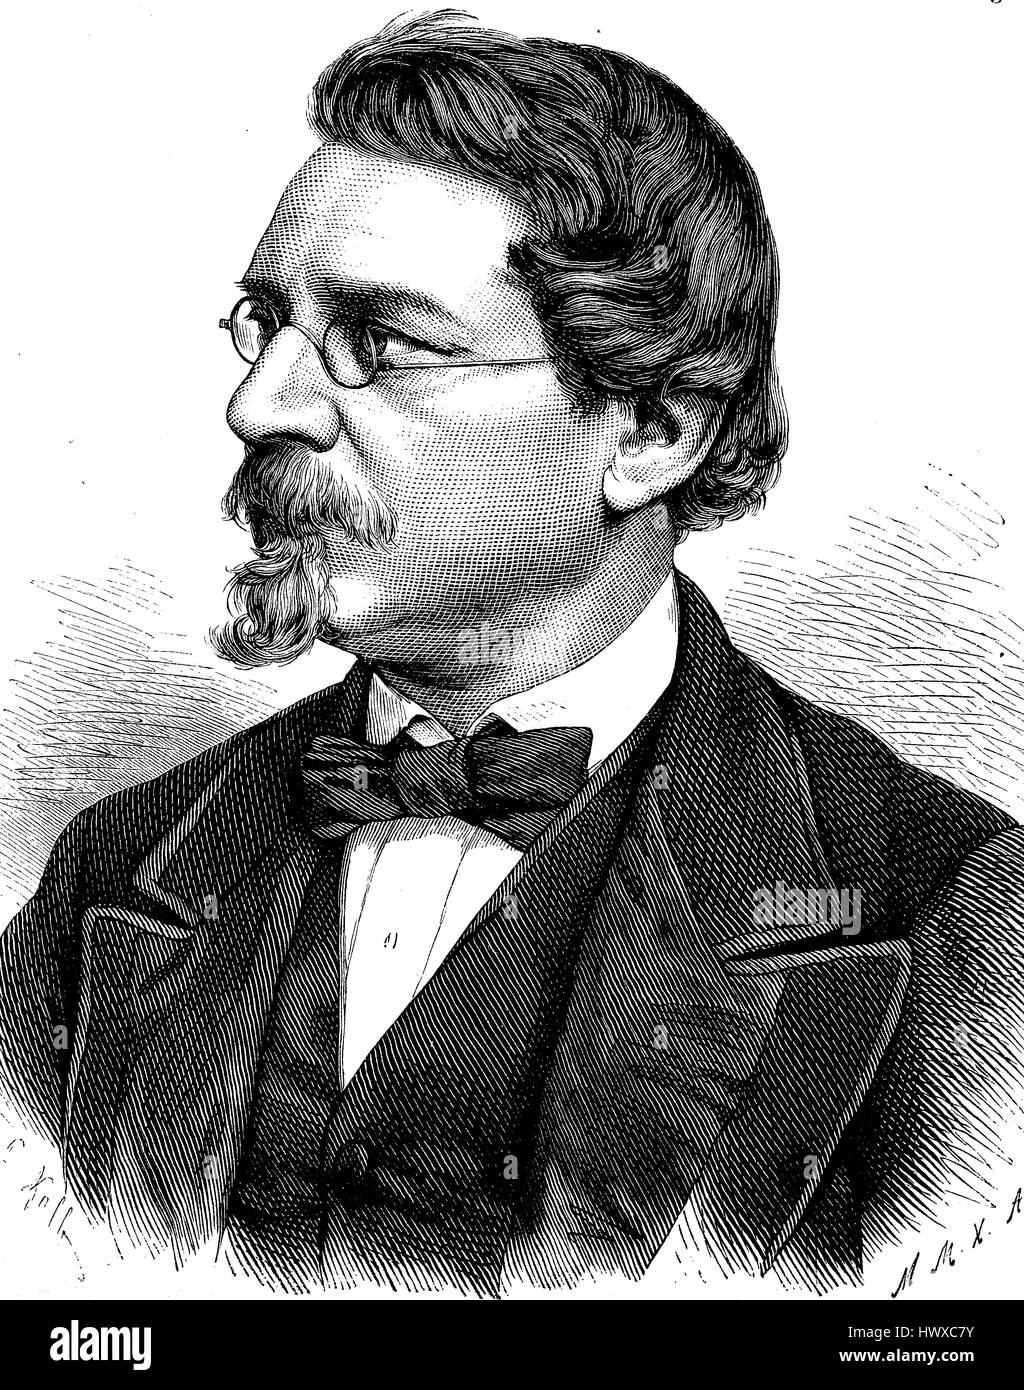 August Wilhelm von Hofmann, 8 avril 1818 - 5 mai 1892, était un chimiste allemand, l'Allemagne, la reproduction d'une image, gravure sur bois de l'année 1881, l'amélioration numérique Banque D'Images